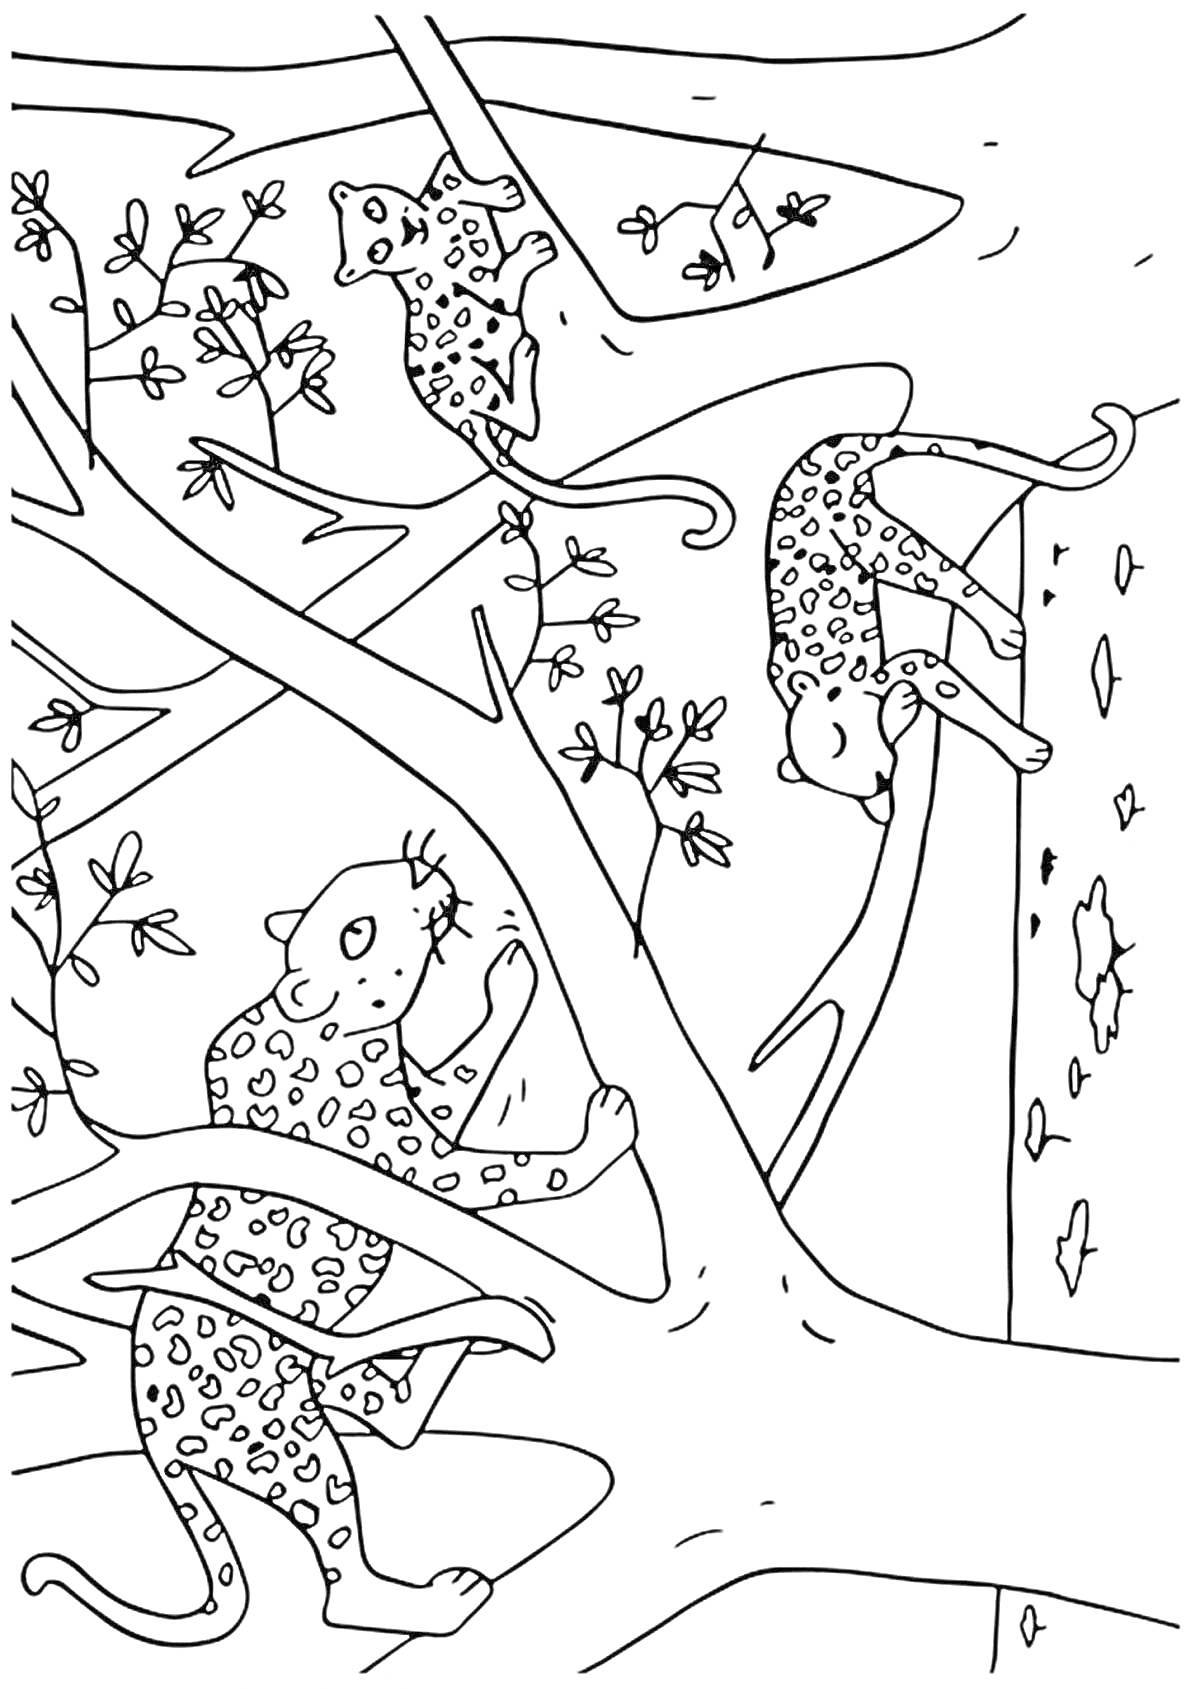 Раскраска Леопарды на деревьях с листьями и ветками